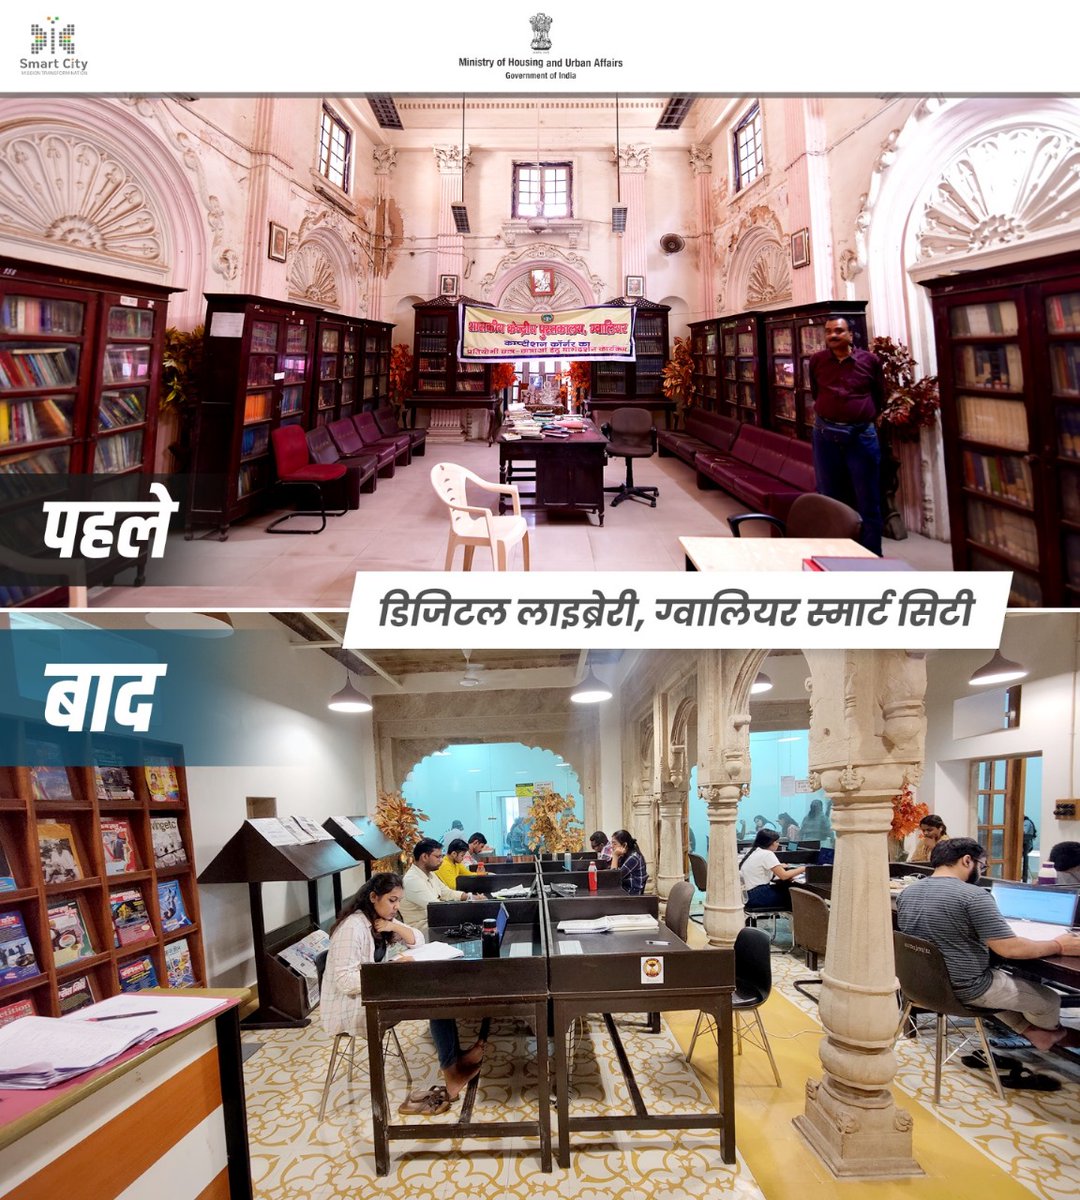 #SmartCitiesMission के तहत पुराने पुस्तकालयों को डिजिटल लाइब्रेरी के रुप में बदलने की प्रक्रिया ज़ोरों पर है। इसी क्रम में ग्वालियर में महाराज बाड़ा स्थित केंद्रीय पुस्तकालय को डिजिटल लाइब्रेरी के रूप में परिवर्तित किया जा रहा है। #SmartCityKiSmartKahani